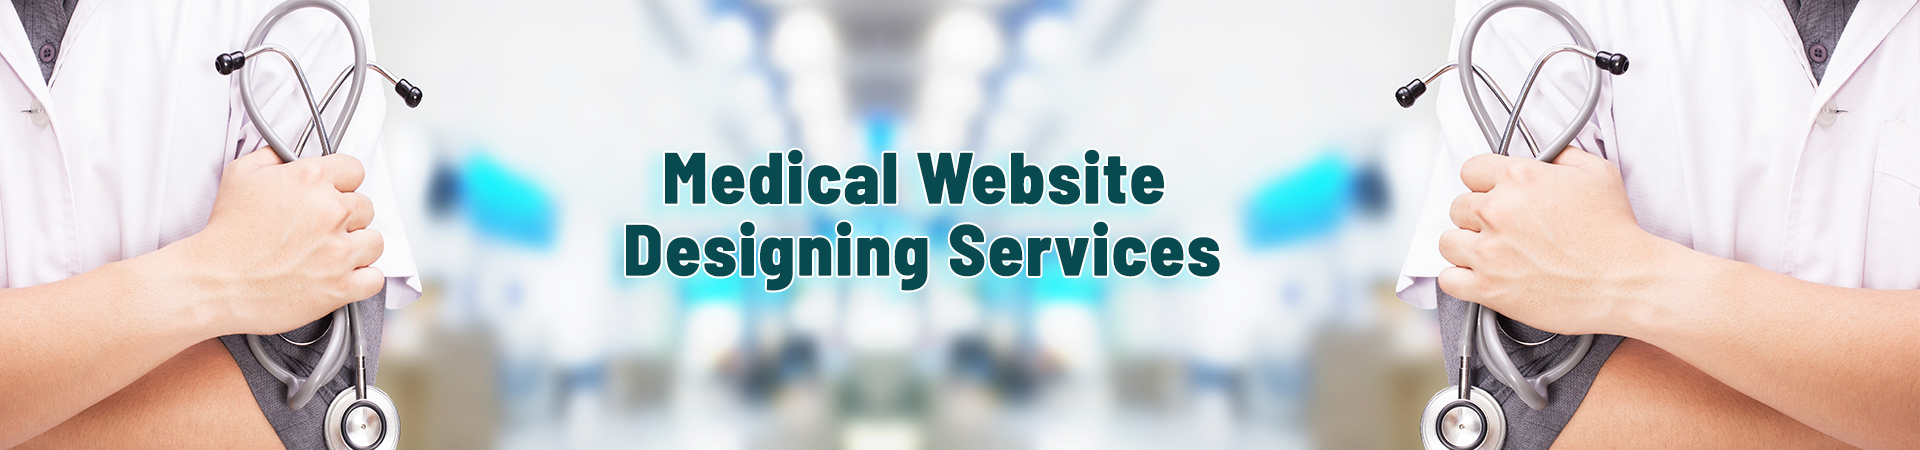 Medical Website Designing Services